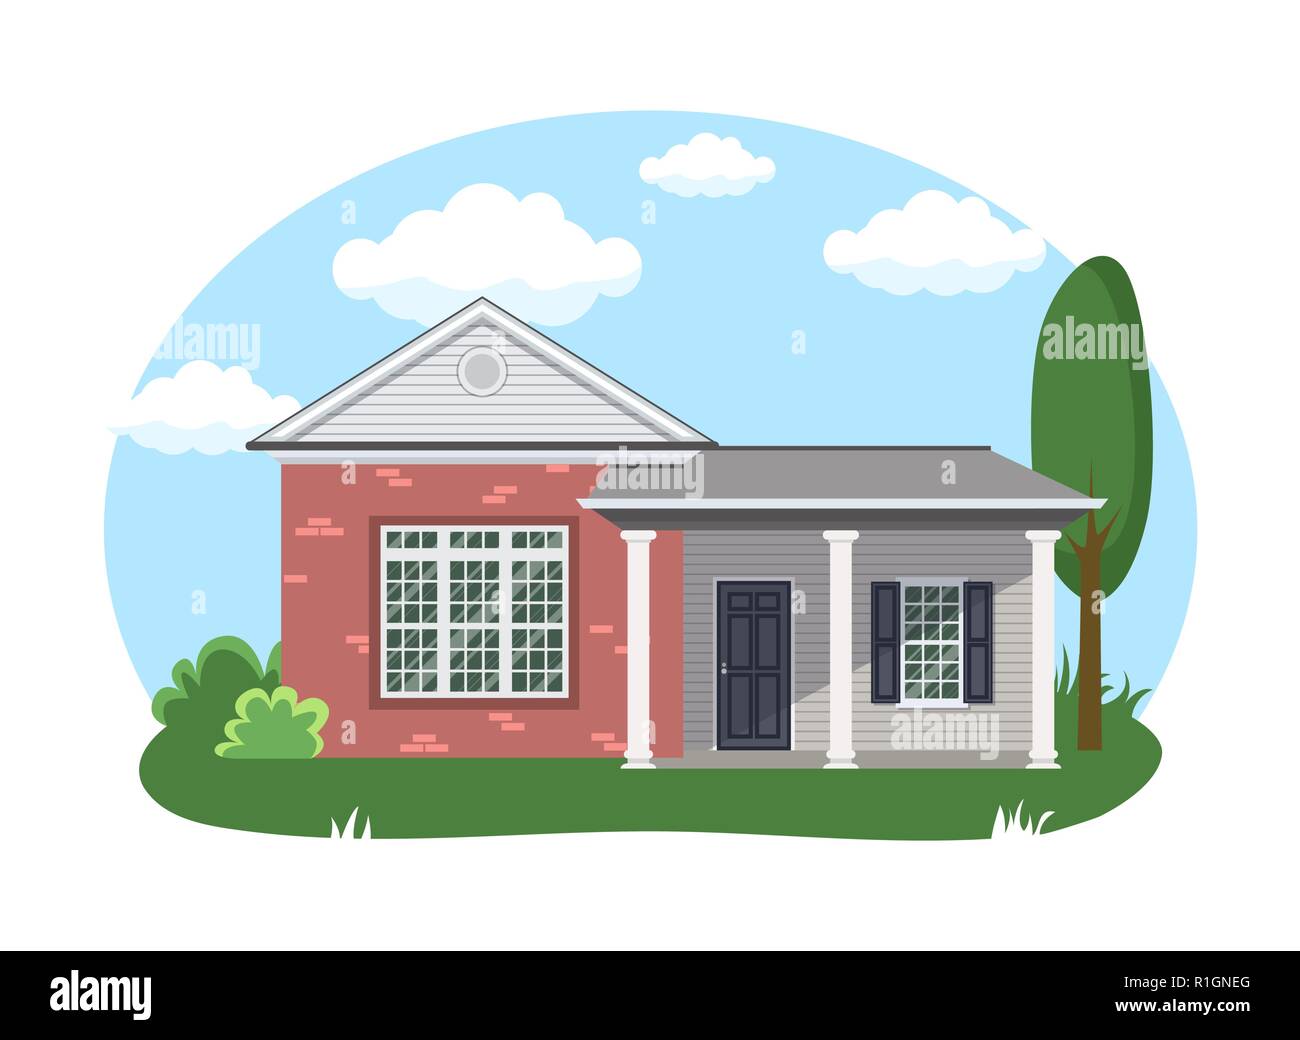 Cartoon Haus außen mit blauen bewölkten Himmel Front Home Architektur Konzept flache Design Stil. Vector Illustration der Fassade Gebäude Stock Vektor